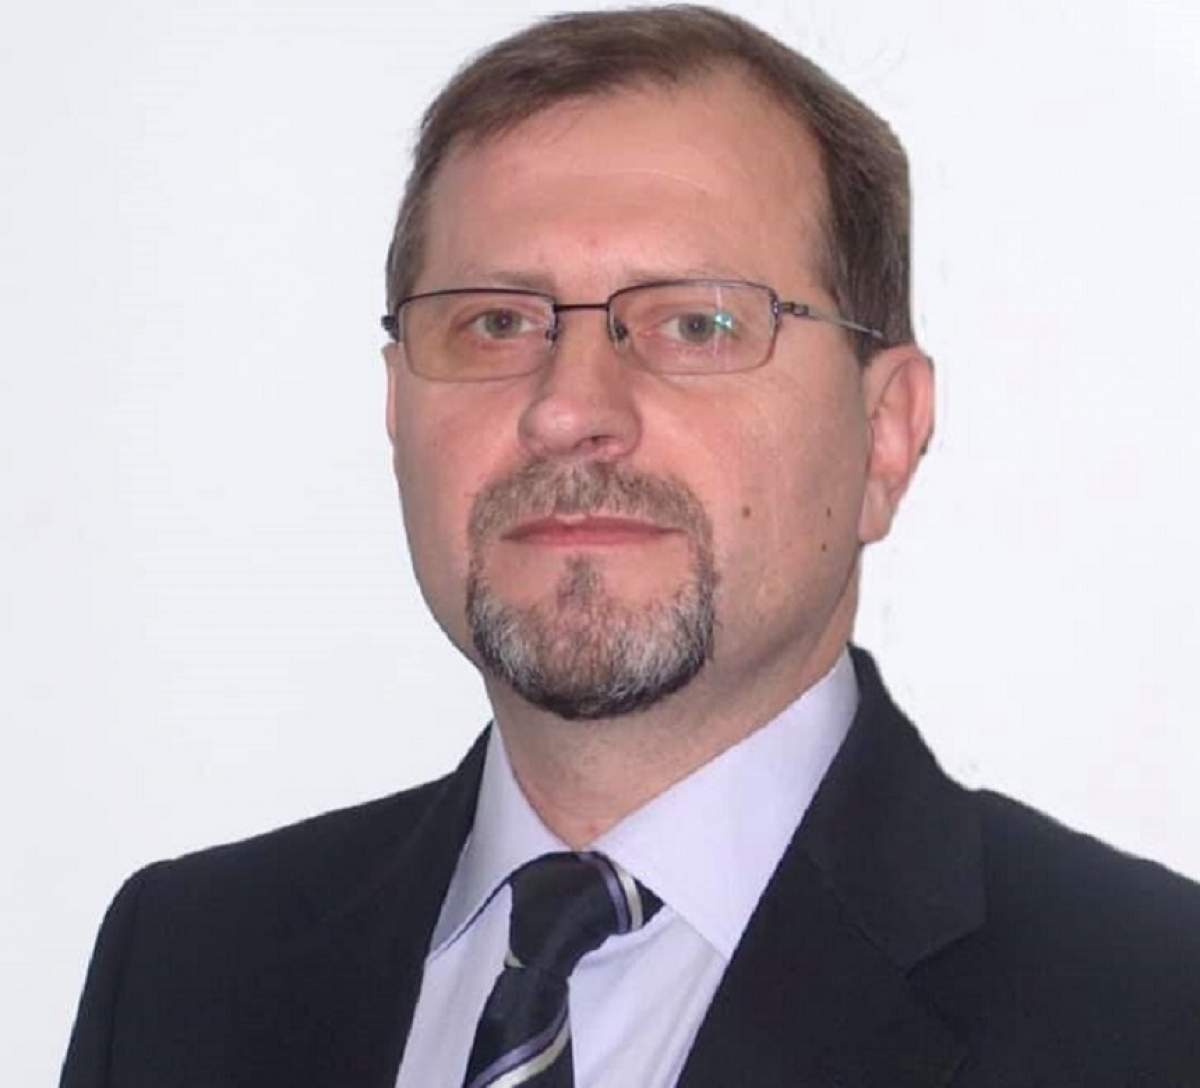 Şeful STS, Ionel Vasilca, a demisionat! "Pentru a nu afecta prestigiul instituției"